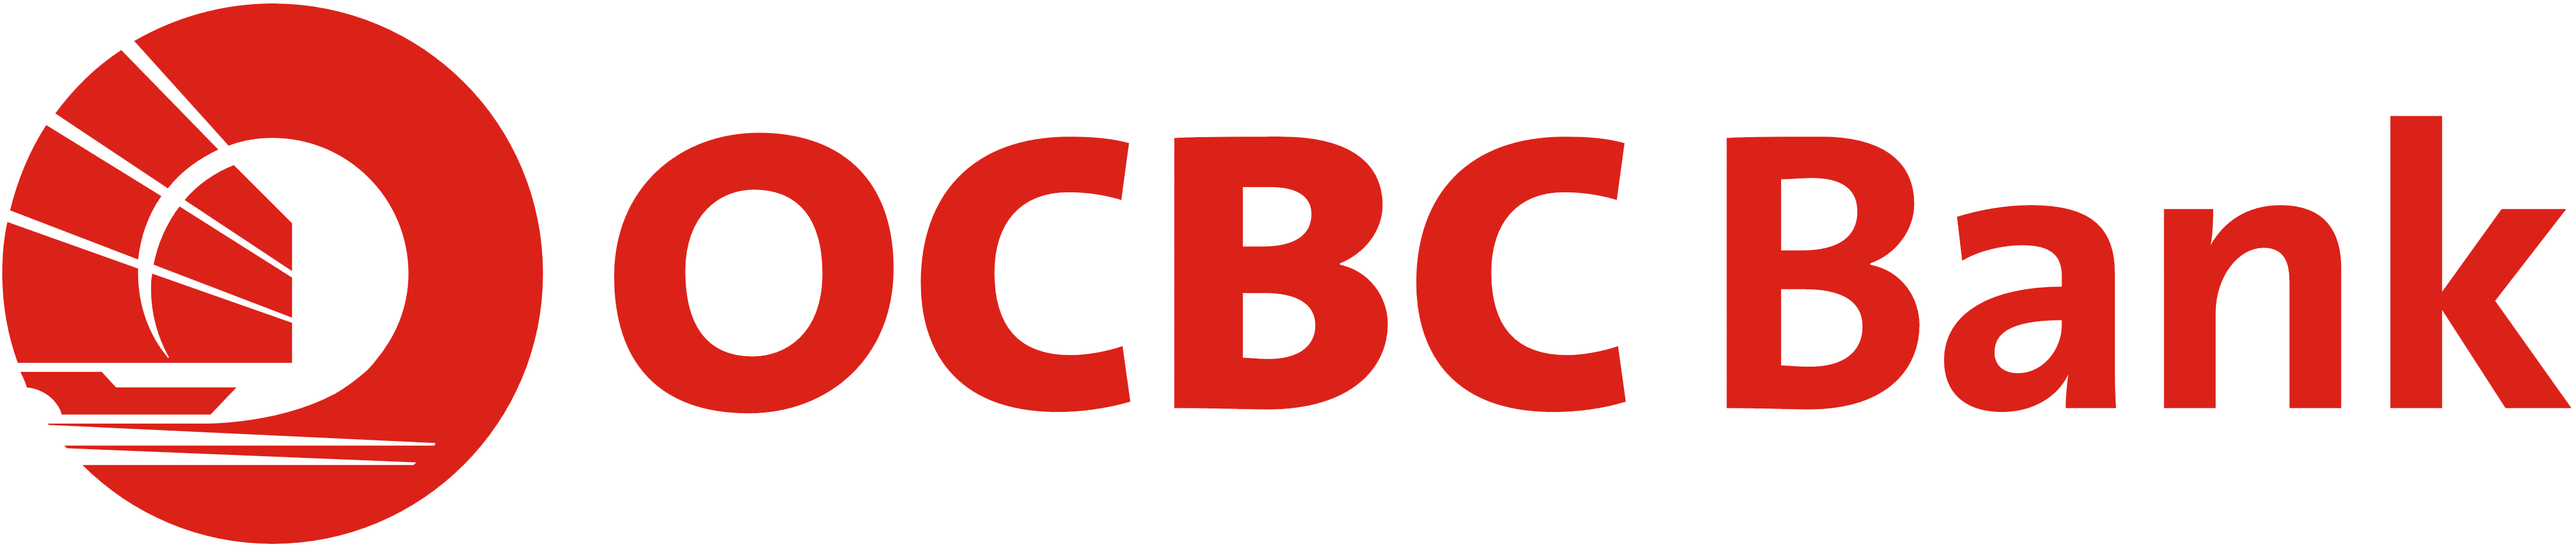 OCBC Logo - OCBC Bank Singapore – Logos Download